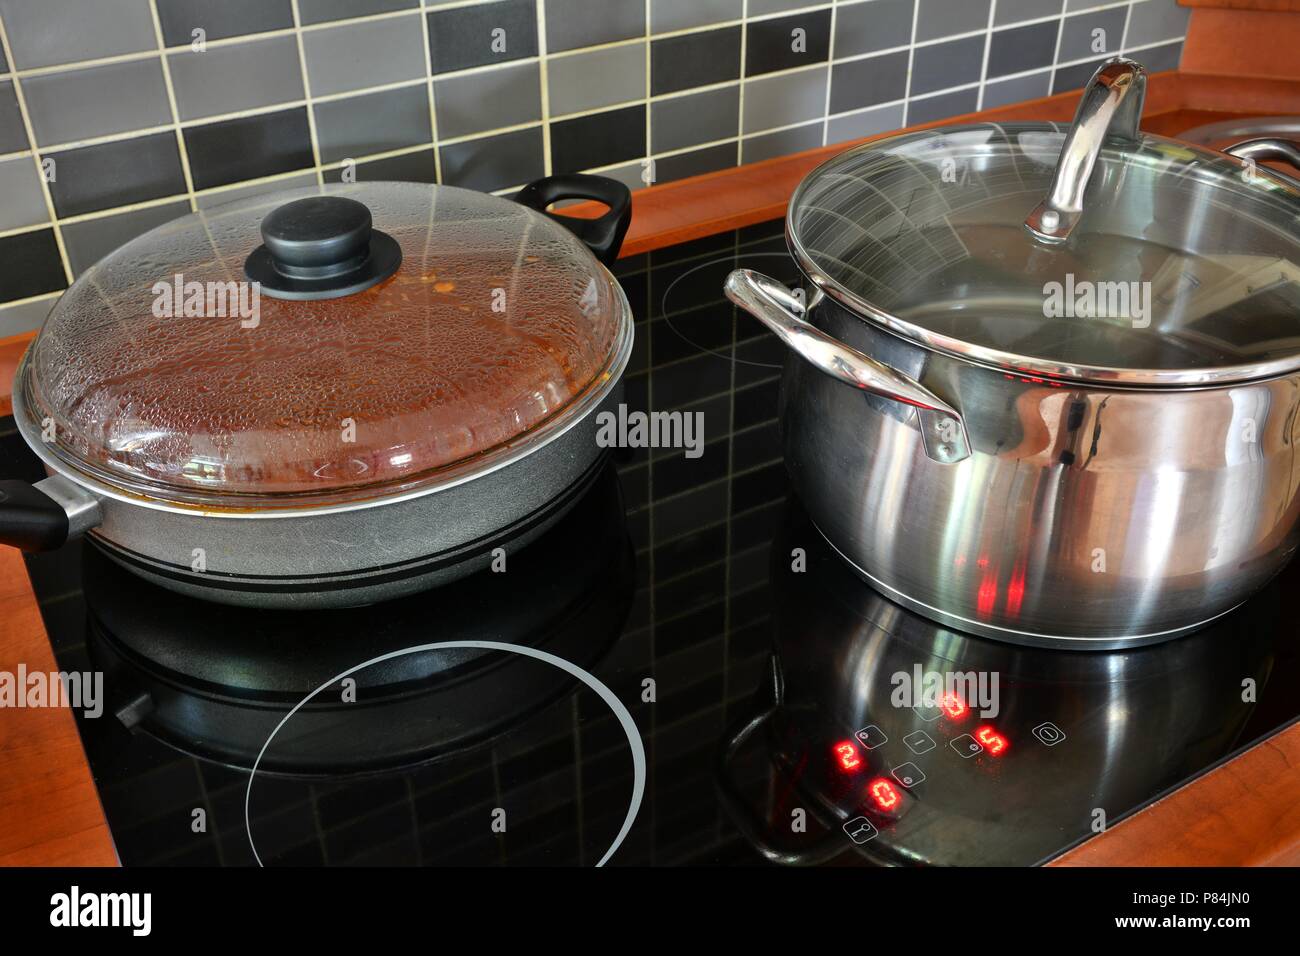 Cuisine avec cuisinière à induction noir acier inoxydable et pan pot. La cuisson dans des pots sur la cuisine cuisinière avec carrelage moderne. Banque D'Images